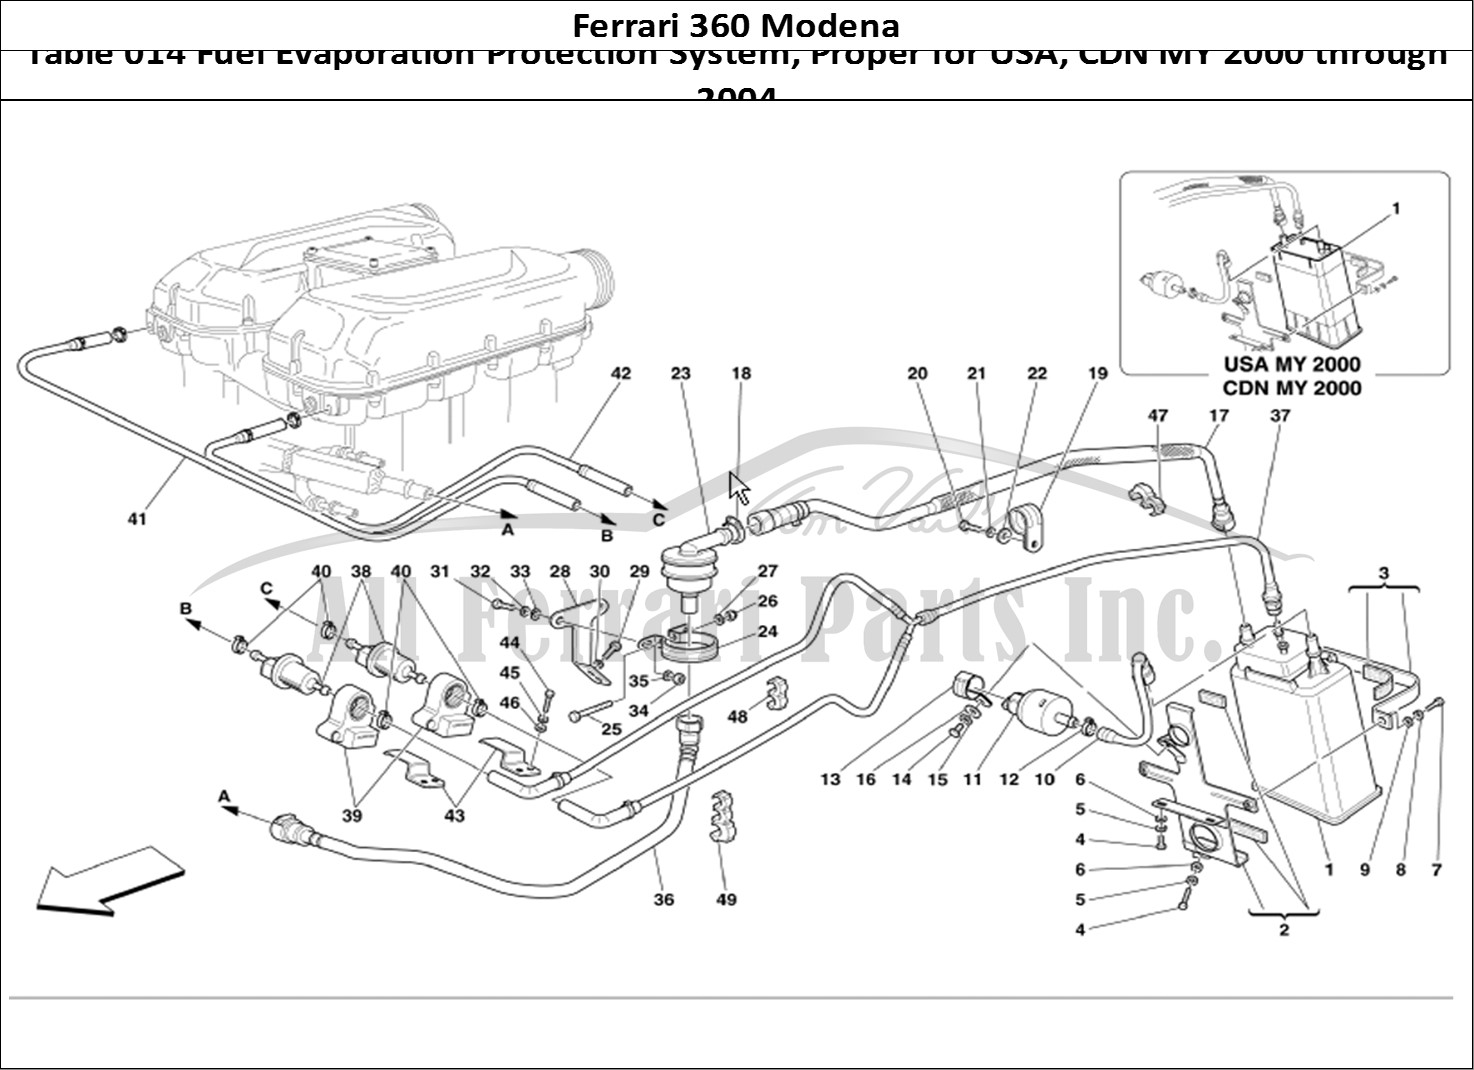 Ferrari Parts Ferrari 360 Modena Page 014 Antievaporation Device -V